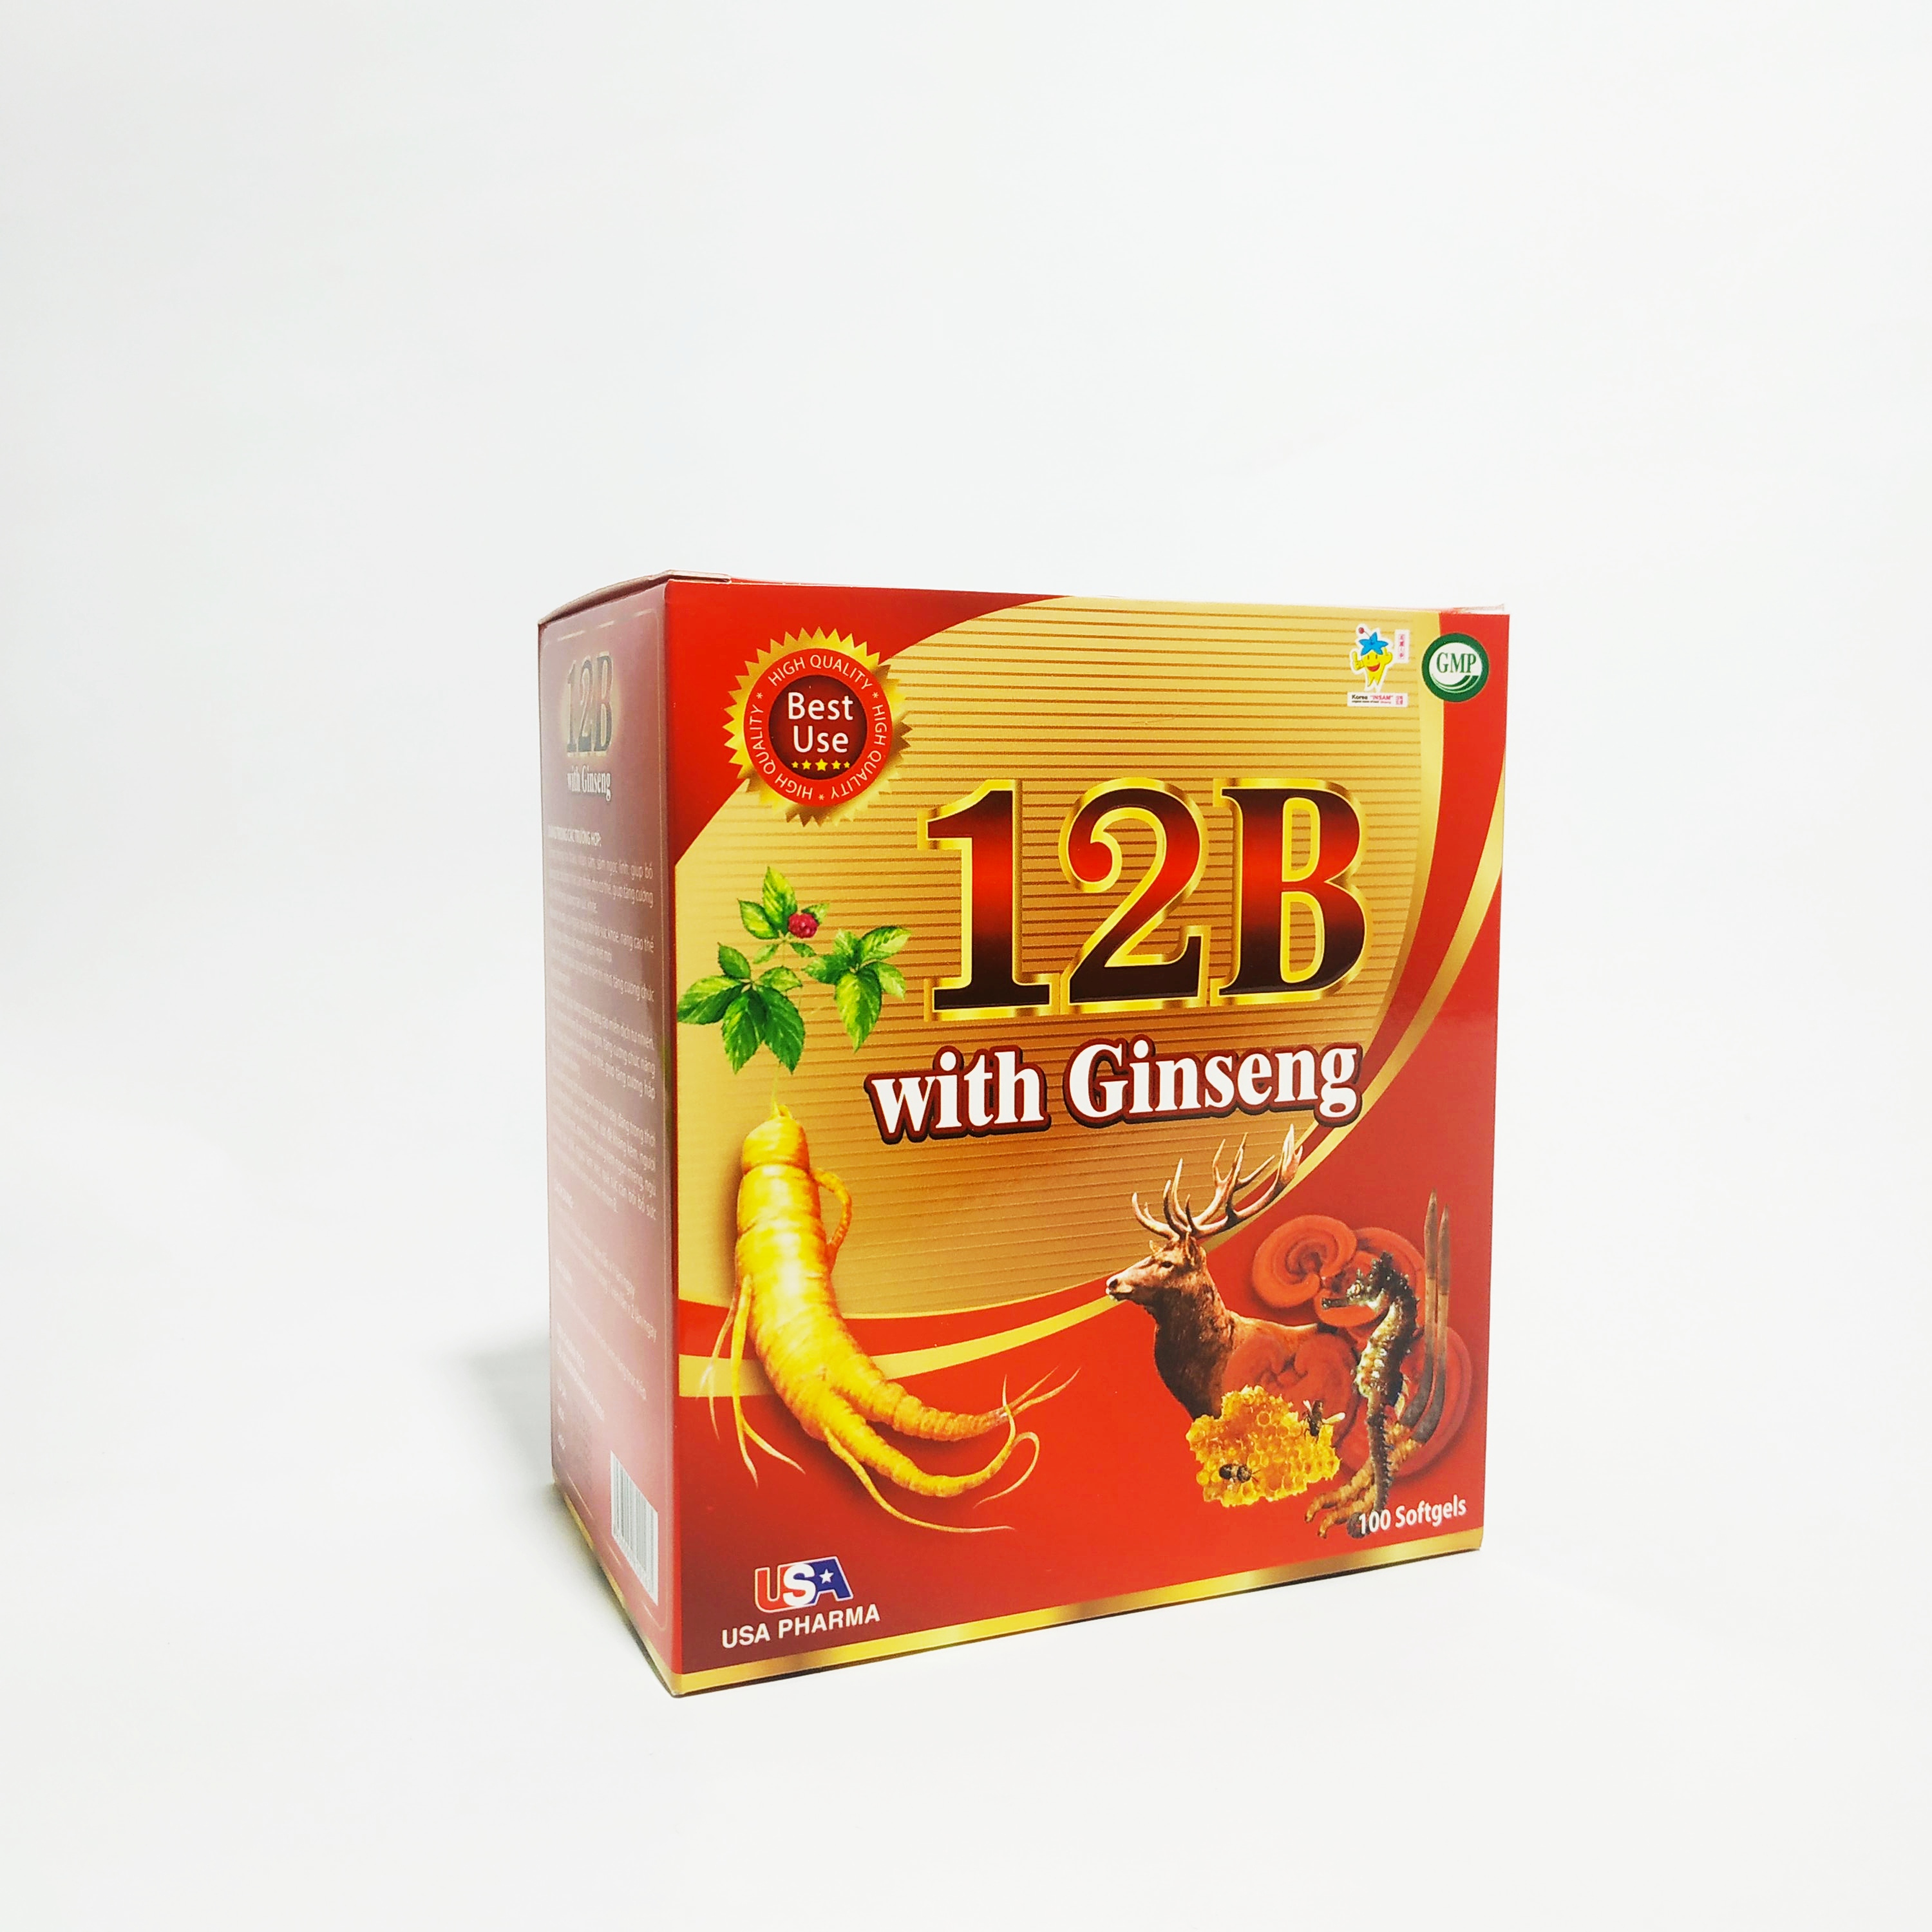 Viên Uống Bồi Bổ Sức Khỏe 12B With Ginseng - Giúp Phục Hồi Sức Khỏe - Nâng Cao Trí Lực - Bổ Sung Các Vitamin Nhóm B - Hộp 100 Viên